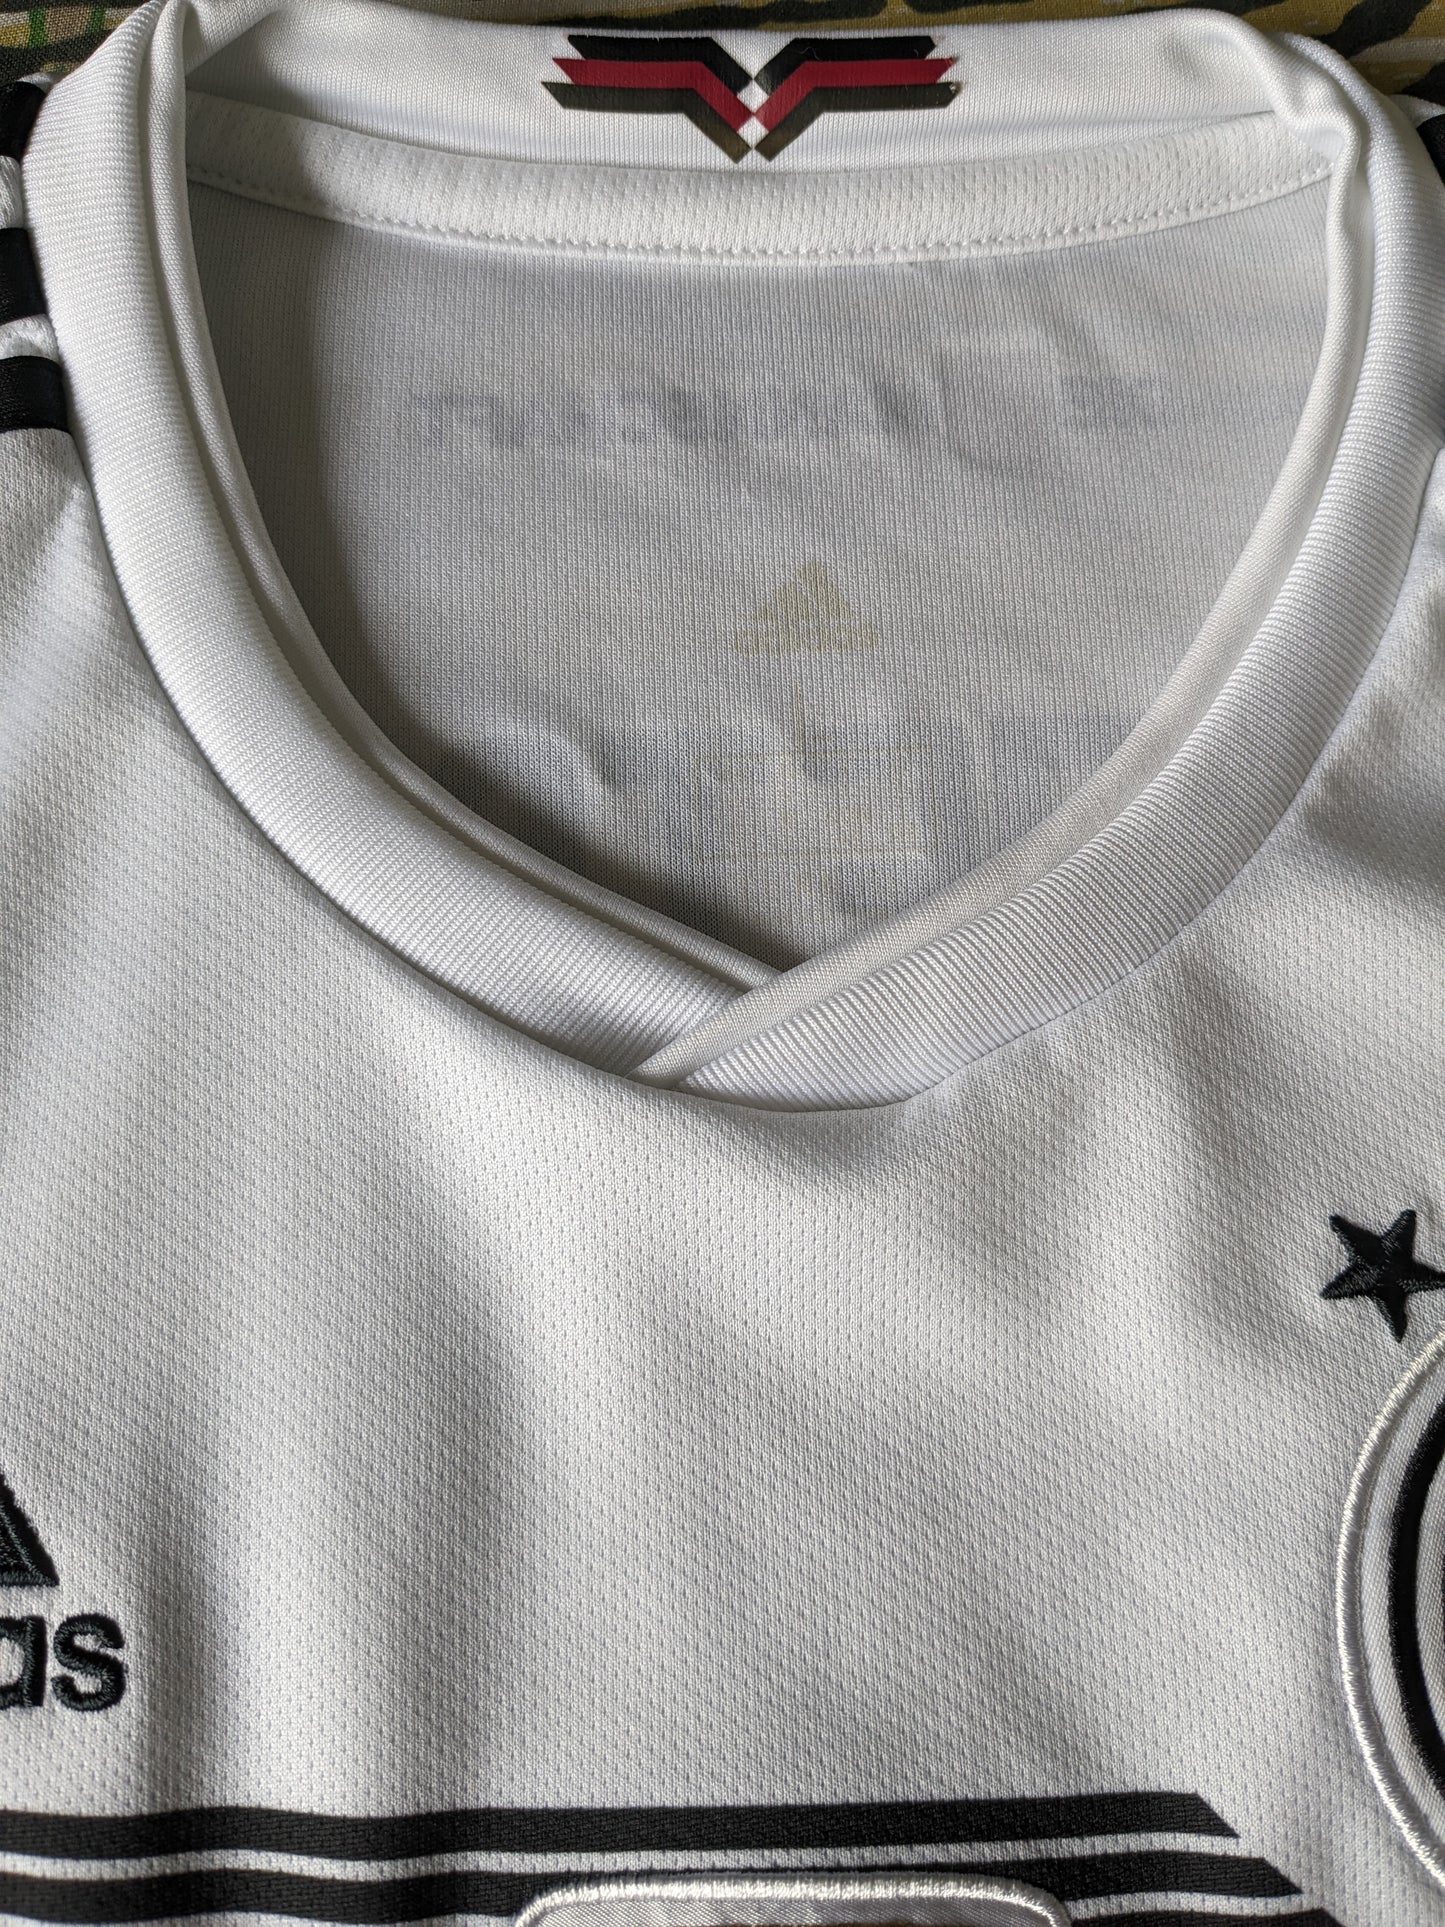 Camicia da bund di fussball adidas deutscher. Bianco di colore nero. FIFA 2014. Taglia M.